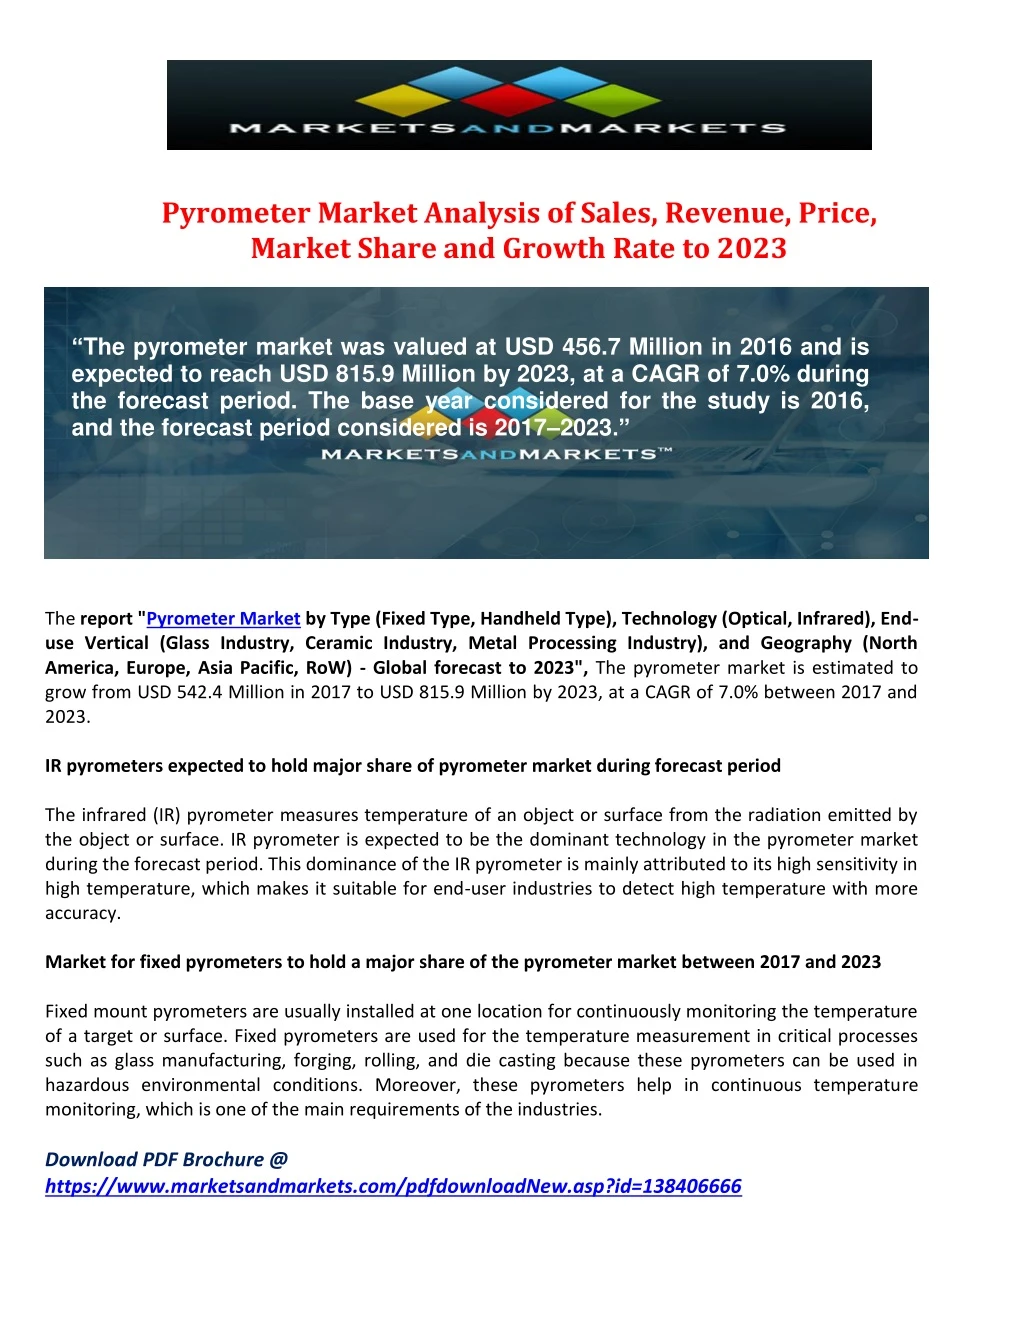 pyrometer market analysis of sales revenue price